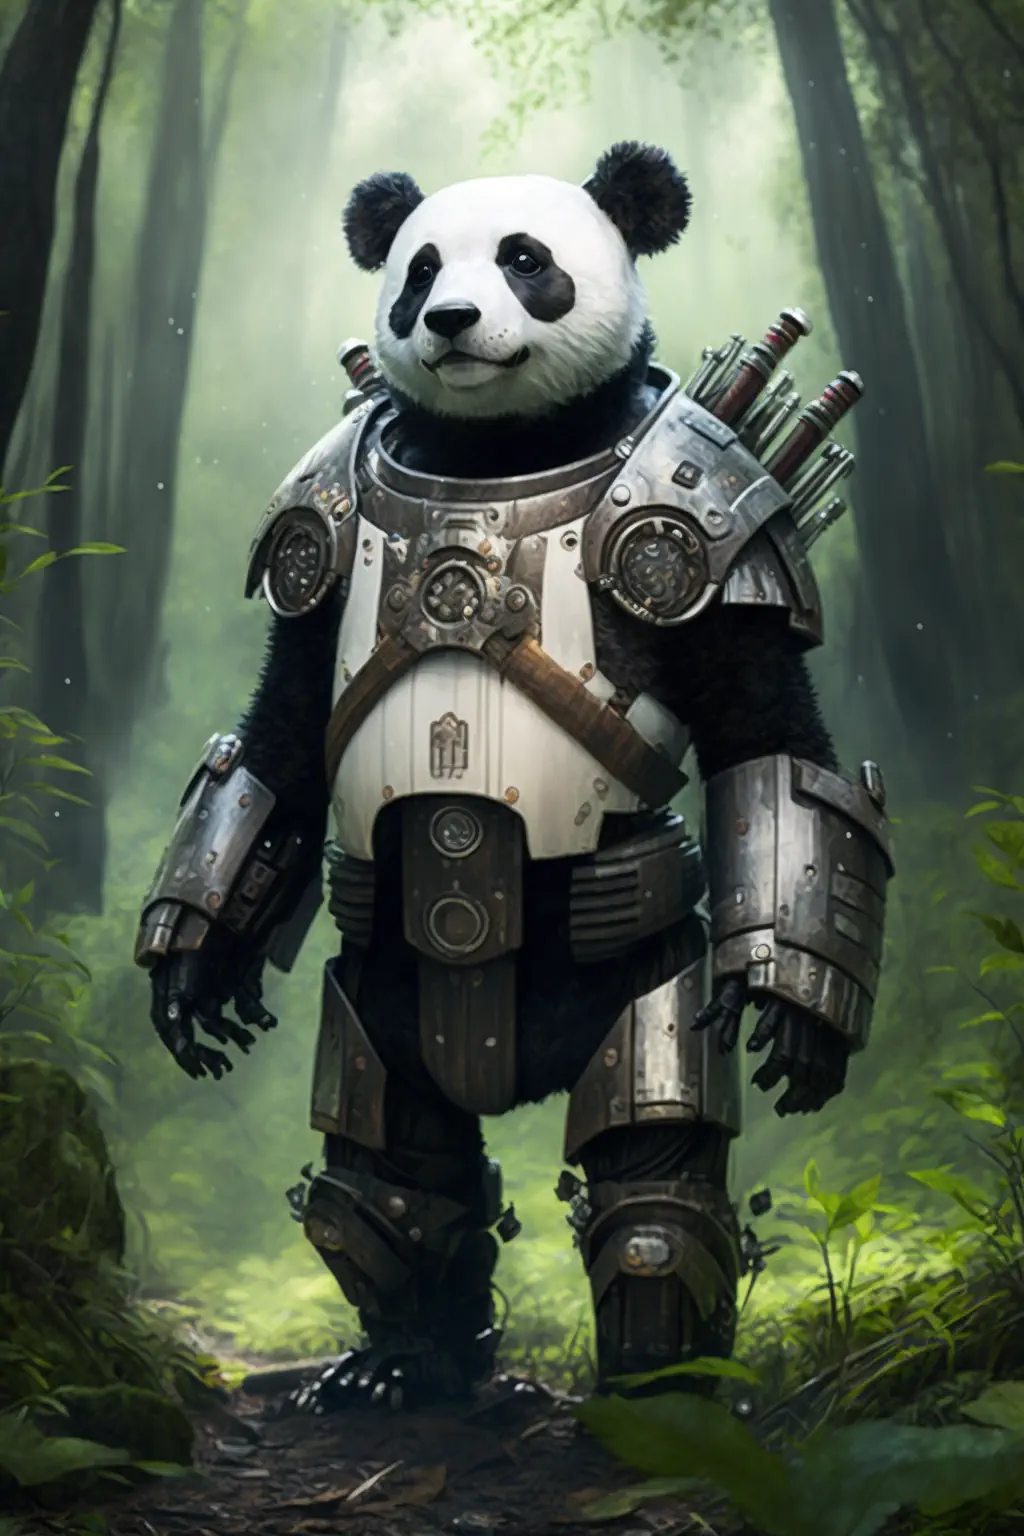 Drac0n0_panda_wearing_sci-fi_armor_in_the_forest_3450f46f-d13c-43fa-a88a-ac496960063c